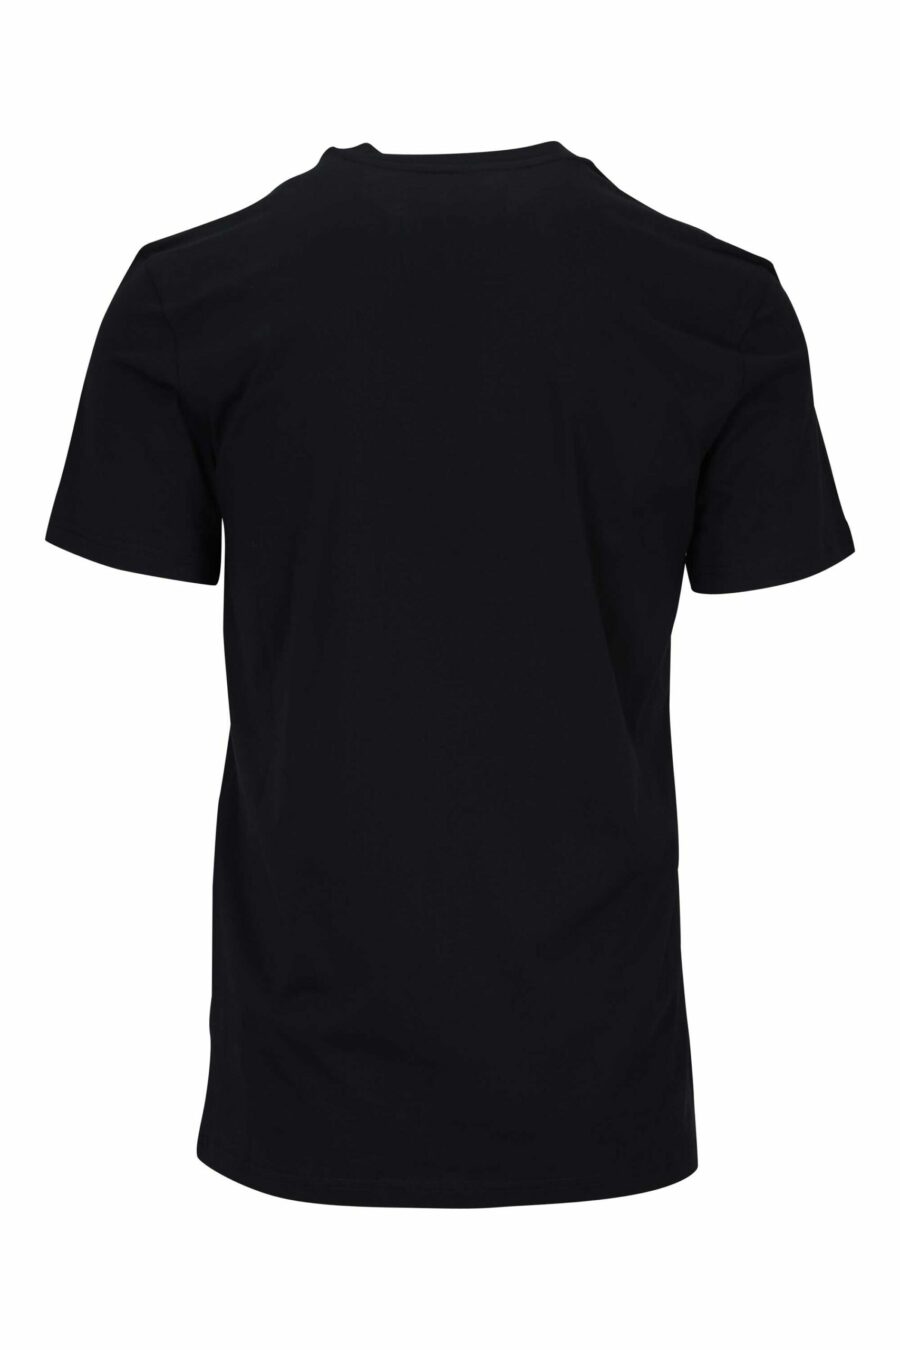 T-shirt preta com minilogo monocromático pontilhado de ursos - 667113455969 1 scaled